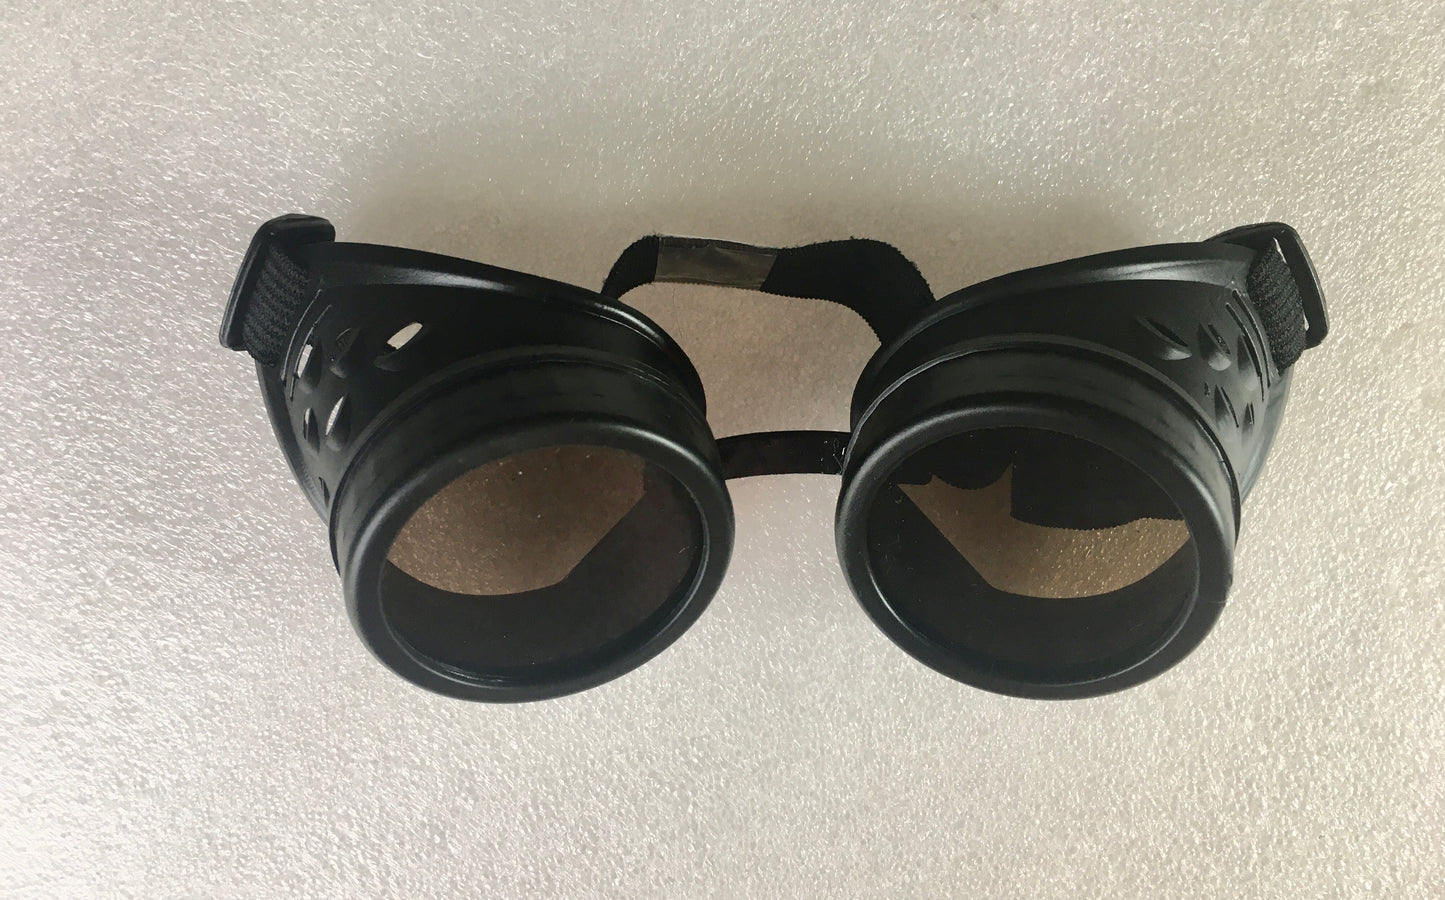 Steampunk goggles ($15 each)